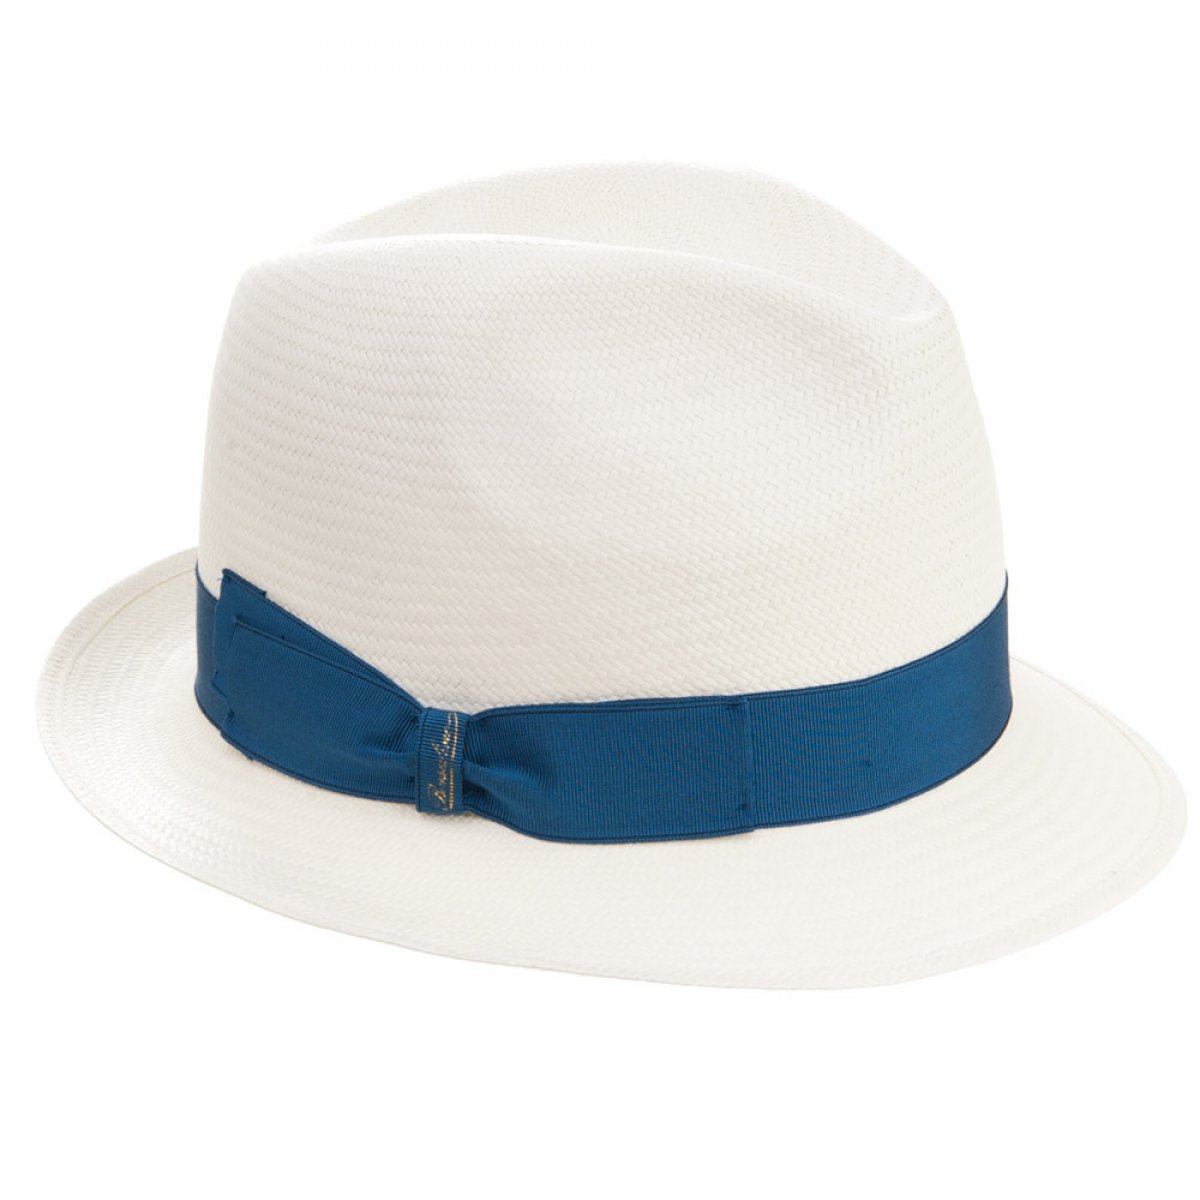 Borsalino cappello borsalino modello panama originale.comprato estate 2021 pagato 280 euro 